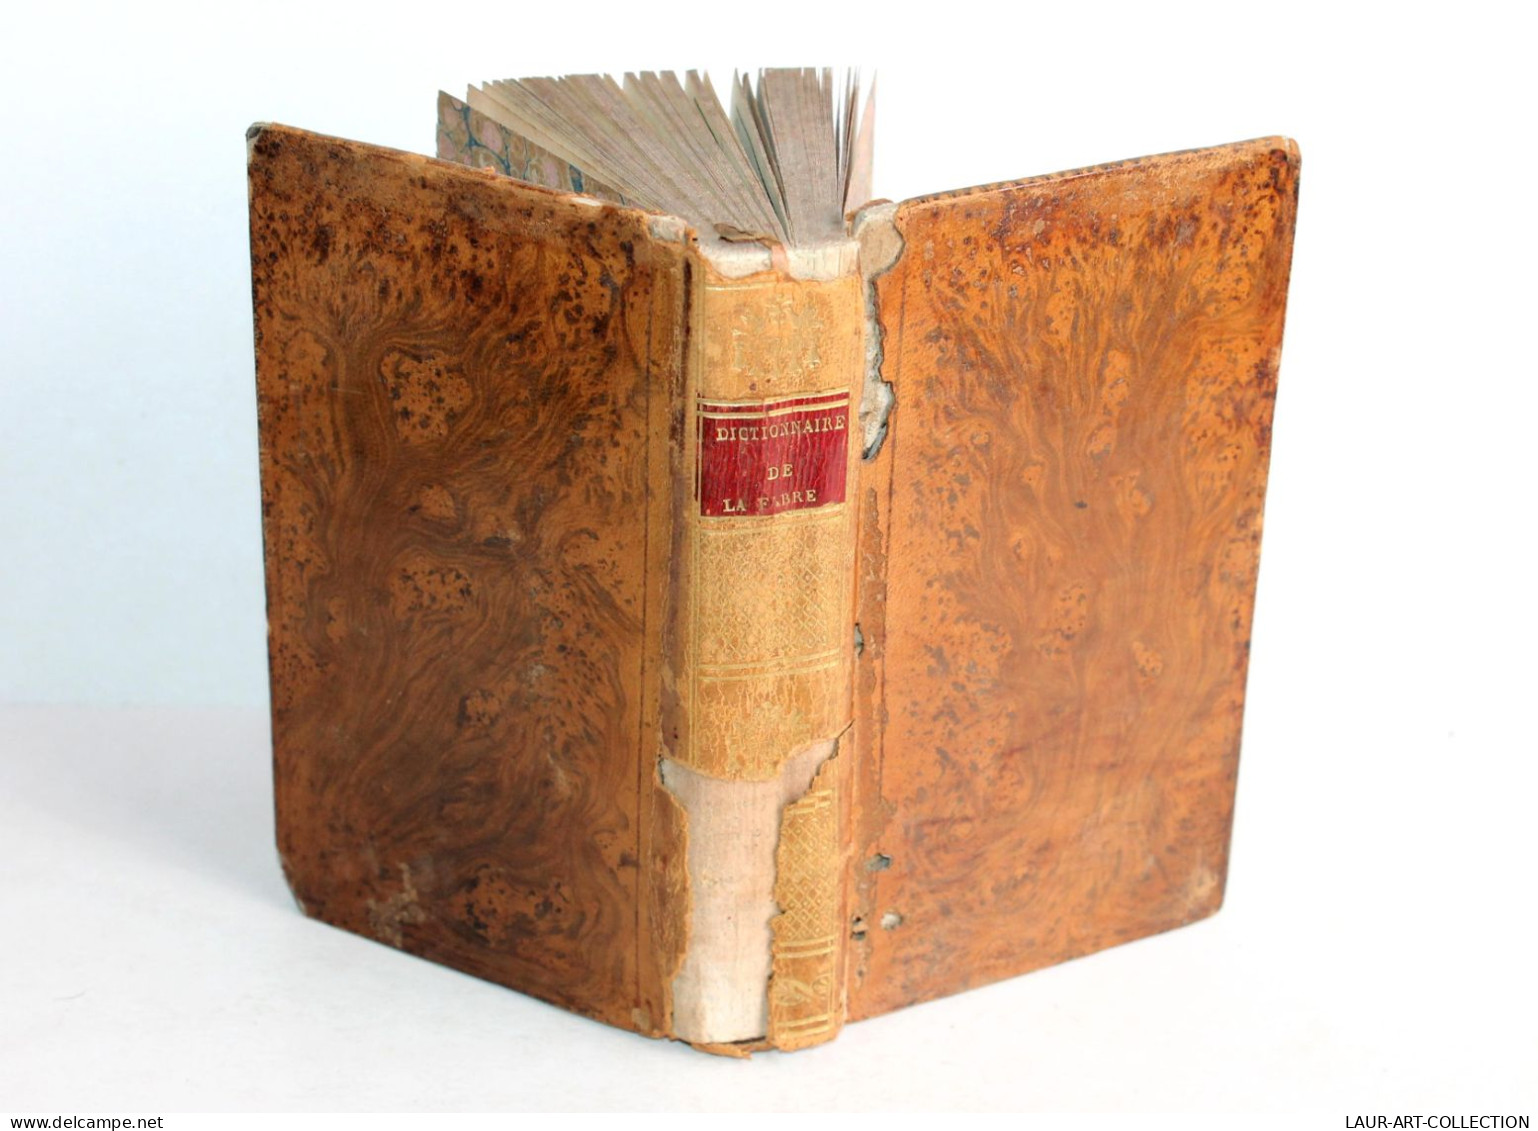 DICTIONNAIRE ABREGE DE LA FABLE Pour DES POETES De CHOMPRE NOUVELLE EDITION 1810 / ANCIEN LIVRE XIXe SIECLE (1803.116) - Autori Francesi